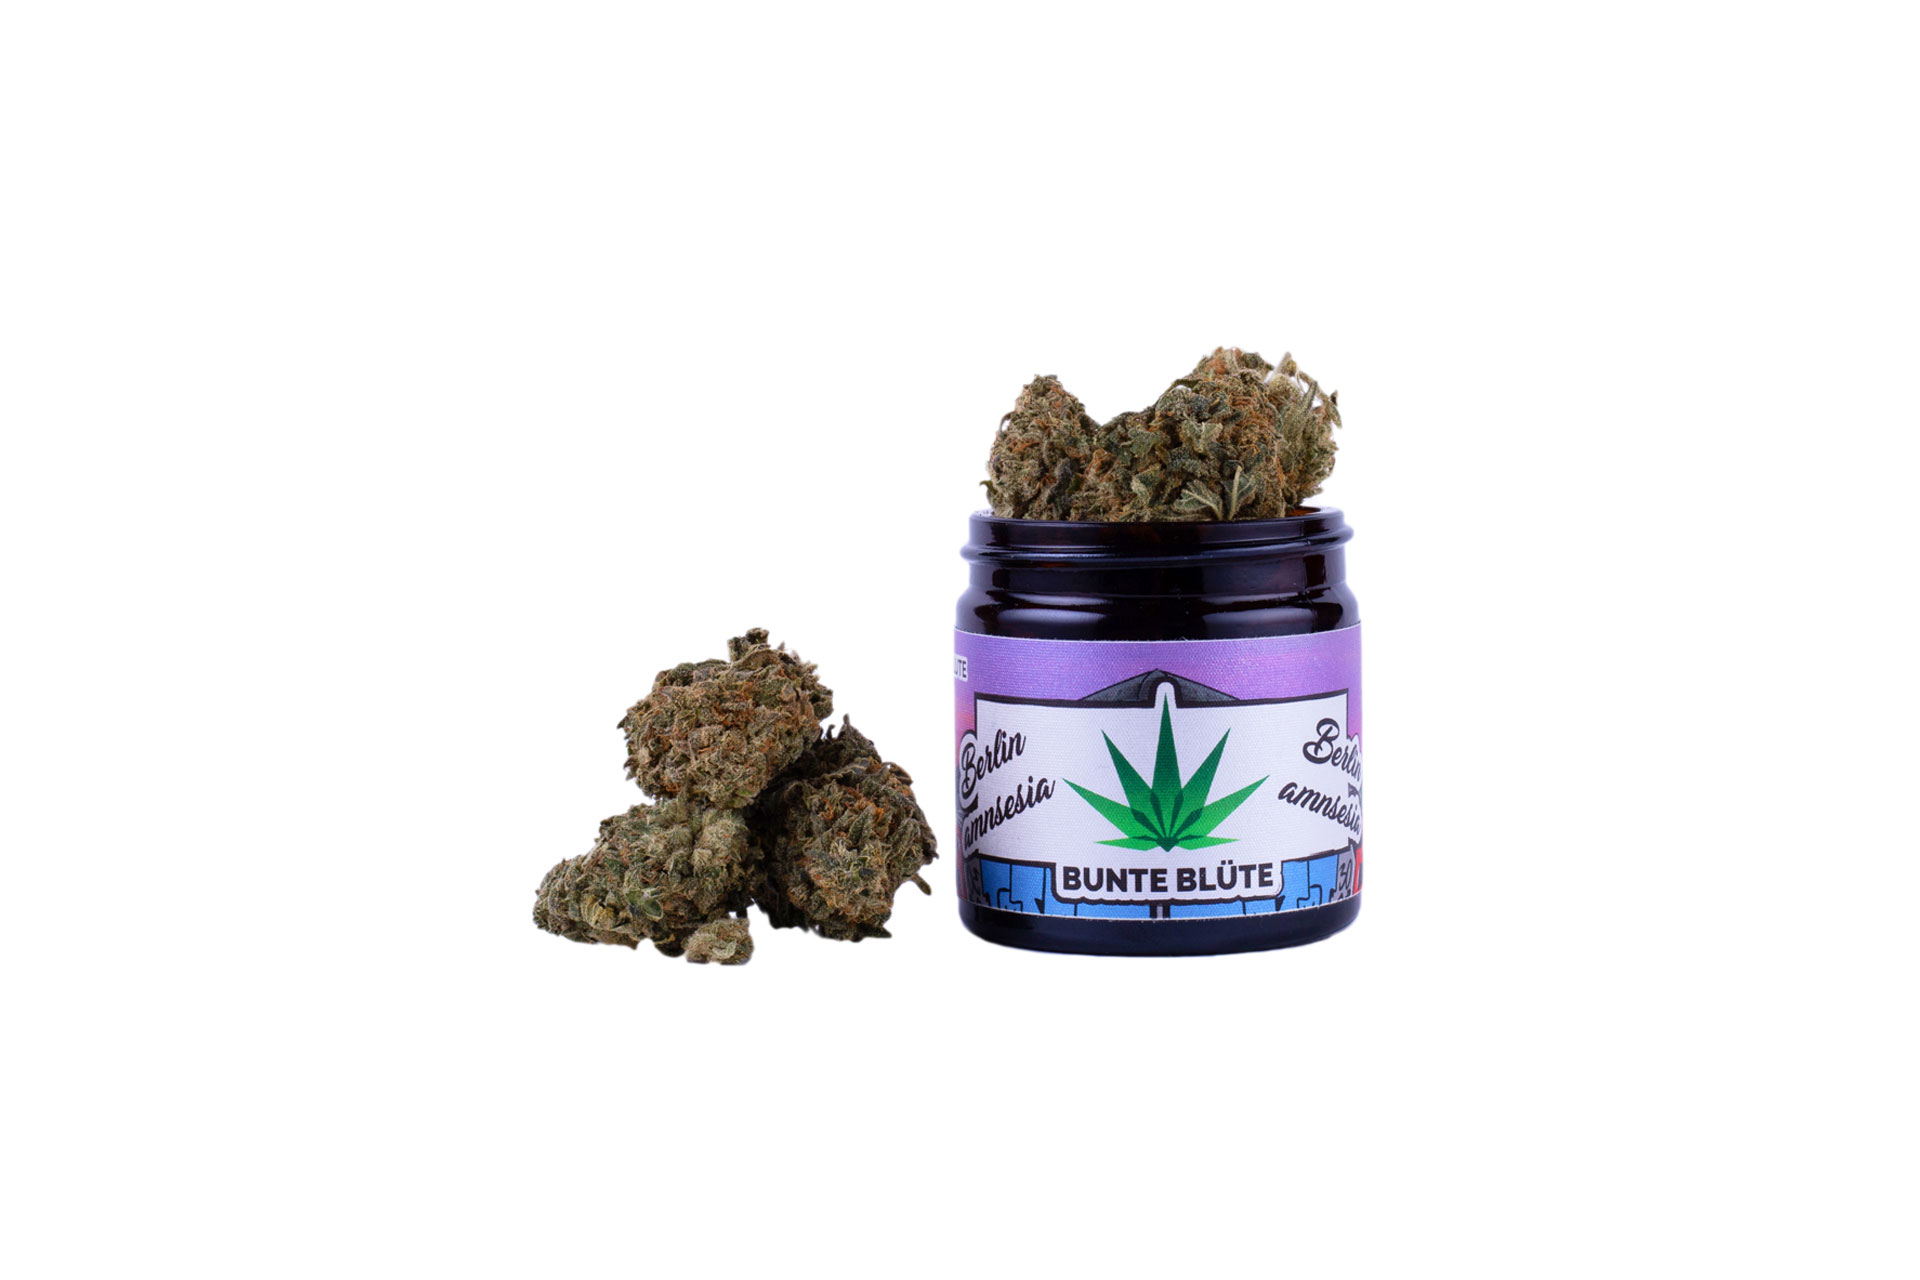 bunte-bluete-cbd-cannabis-berlin-amnesia-2gramm-glas-kaufen